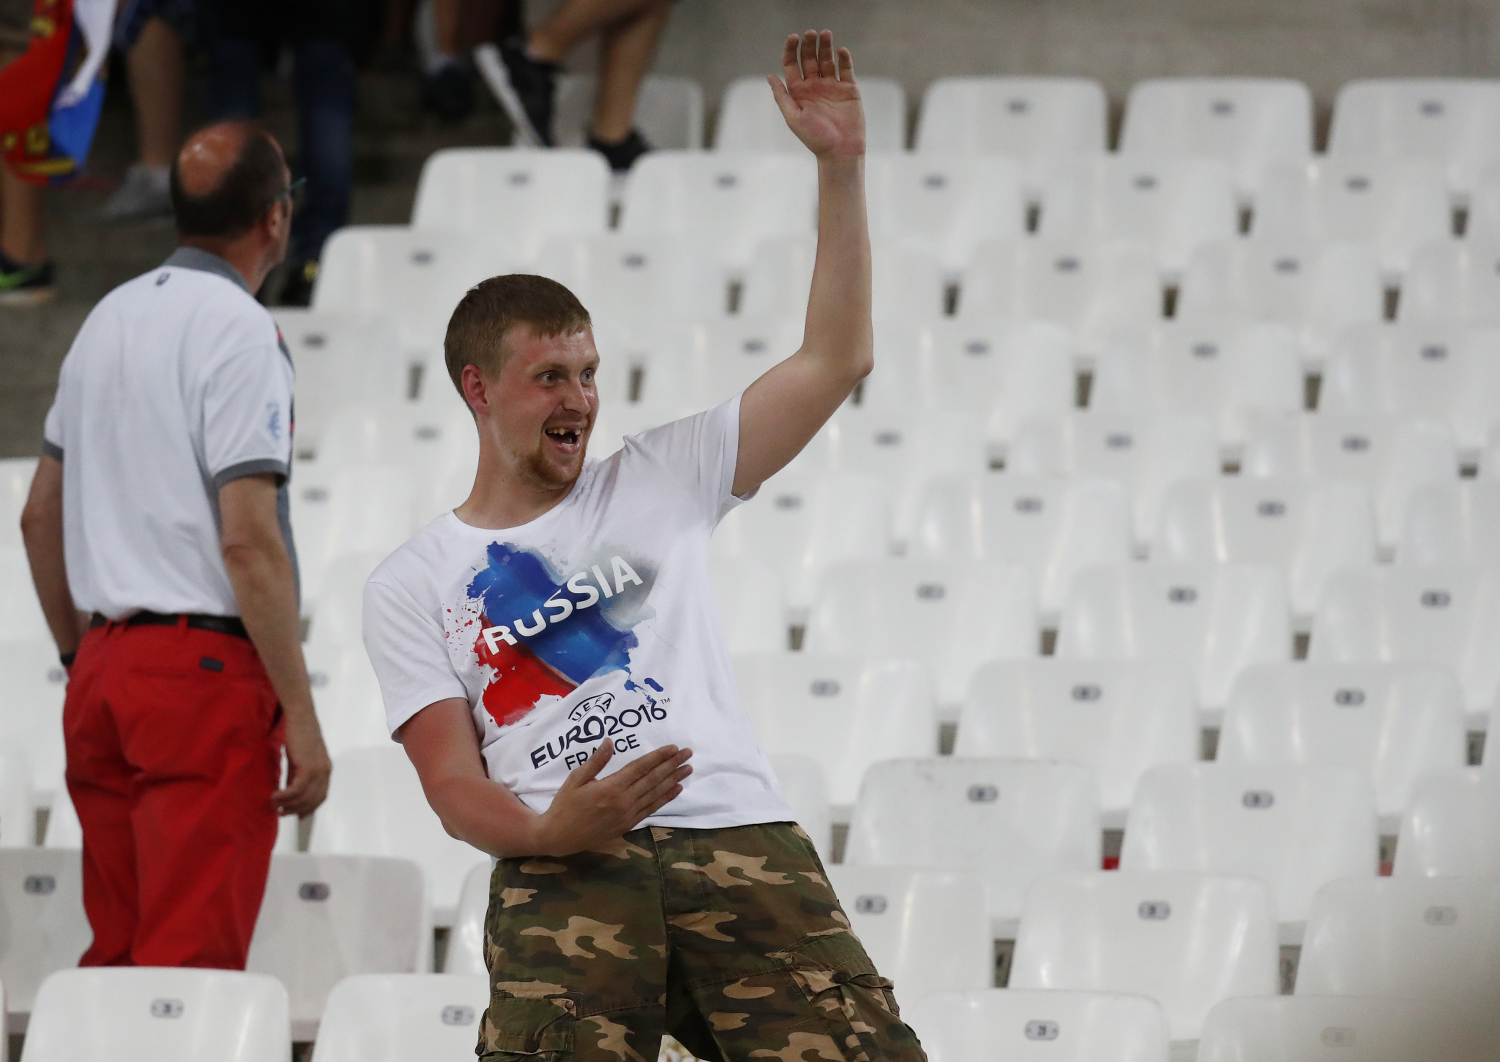 Si los rusos vuelven a protagonizar un incidente su selección será desclasificada da la Eurocopa